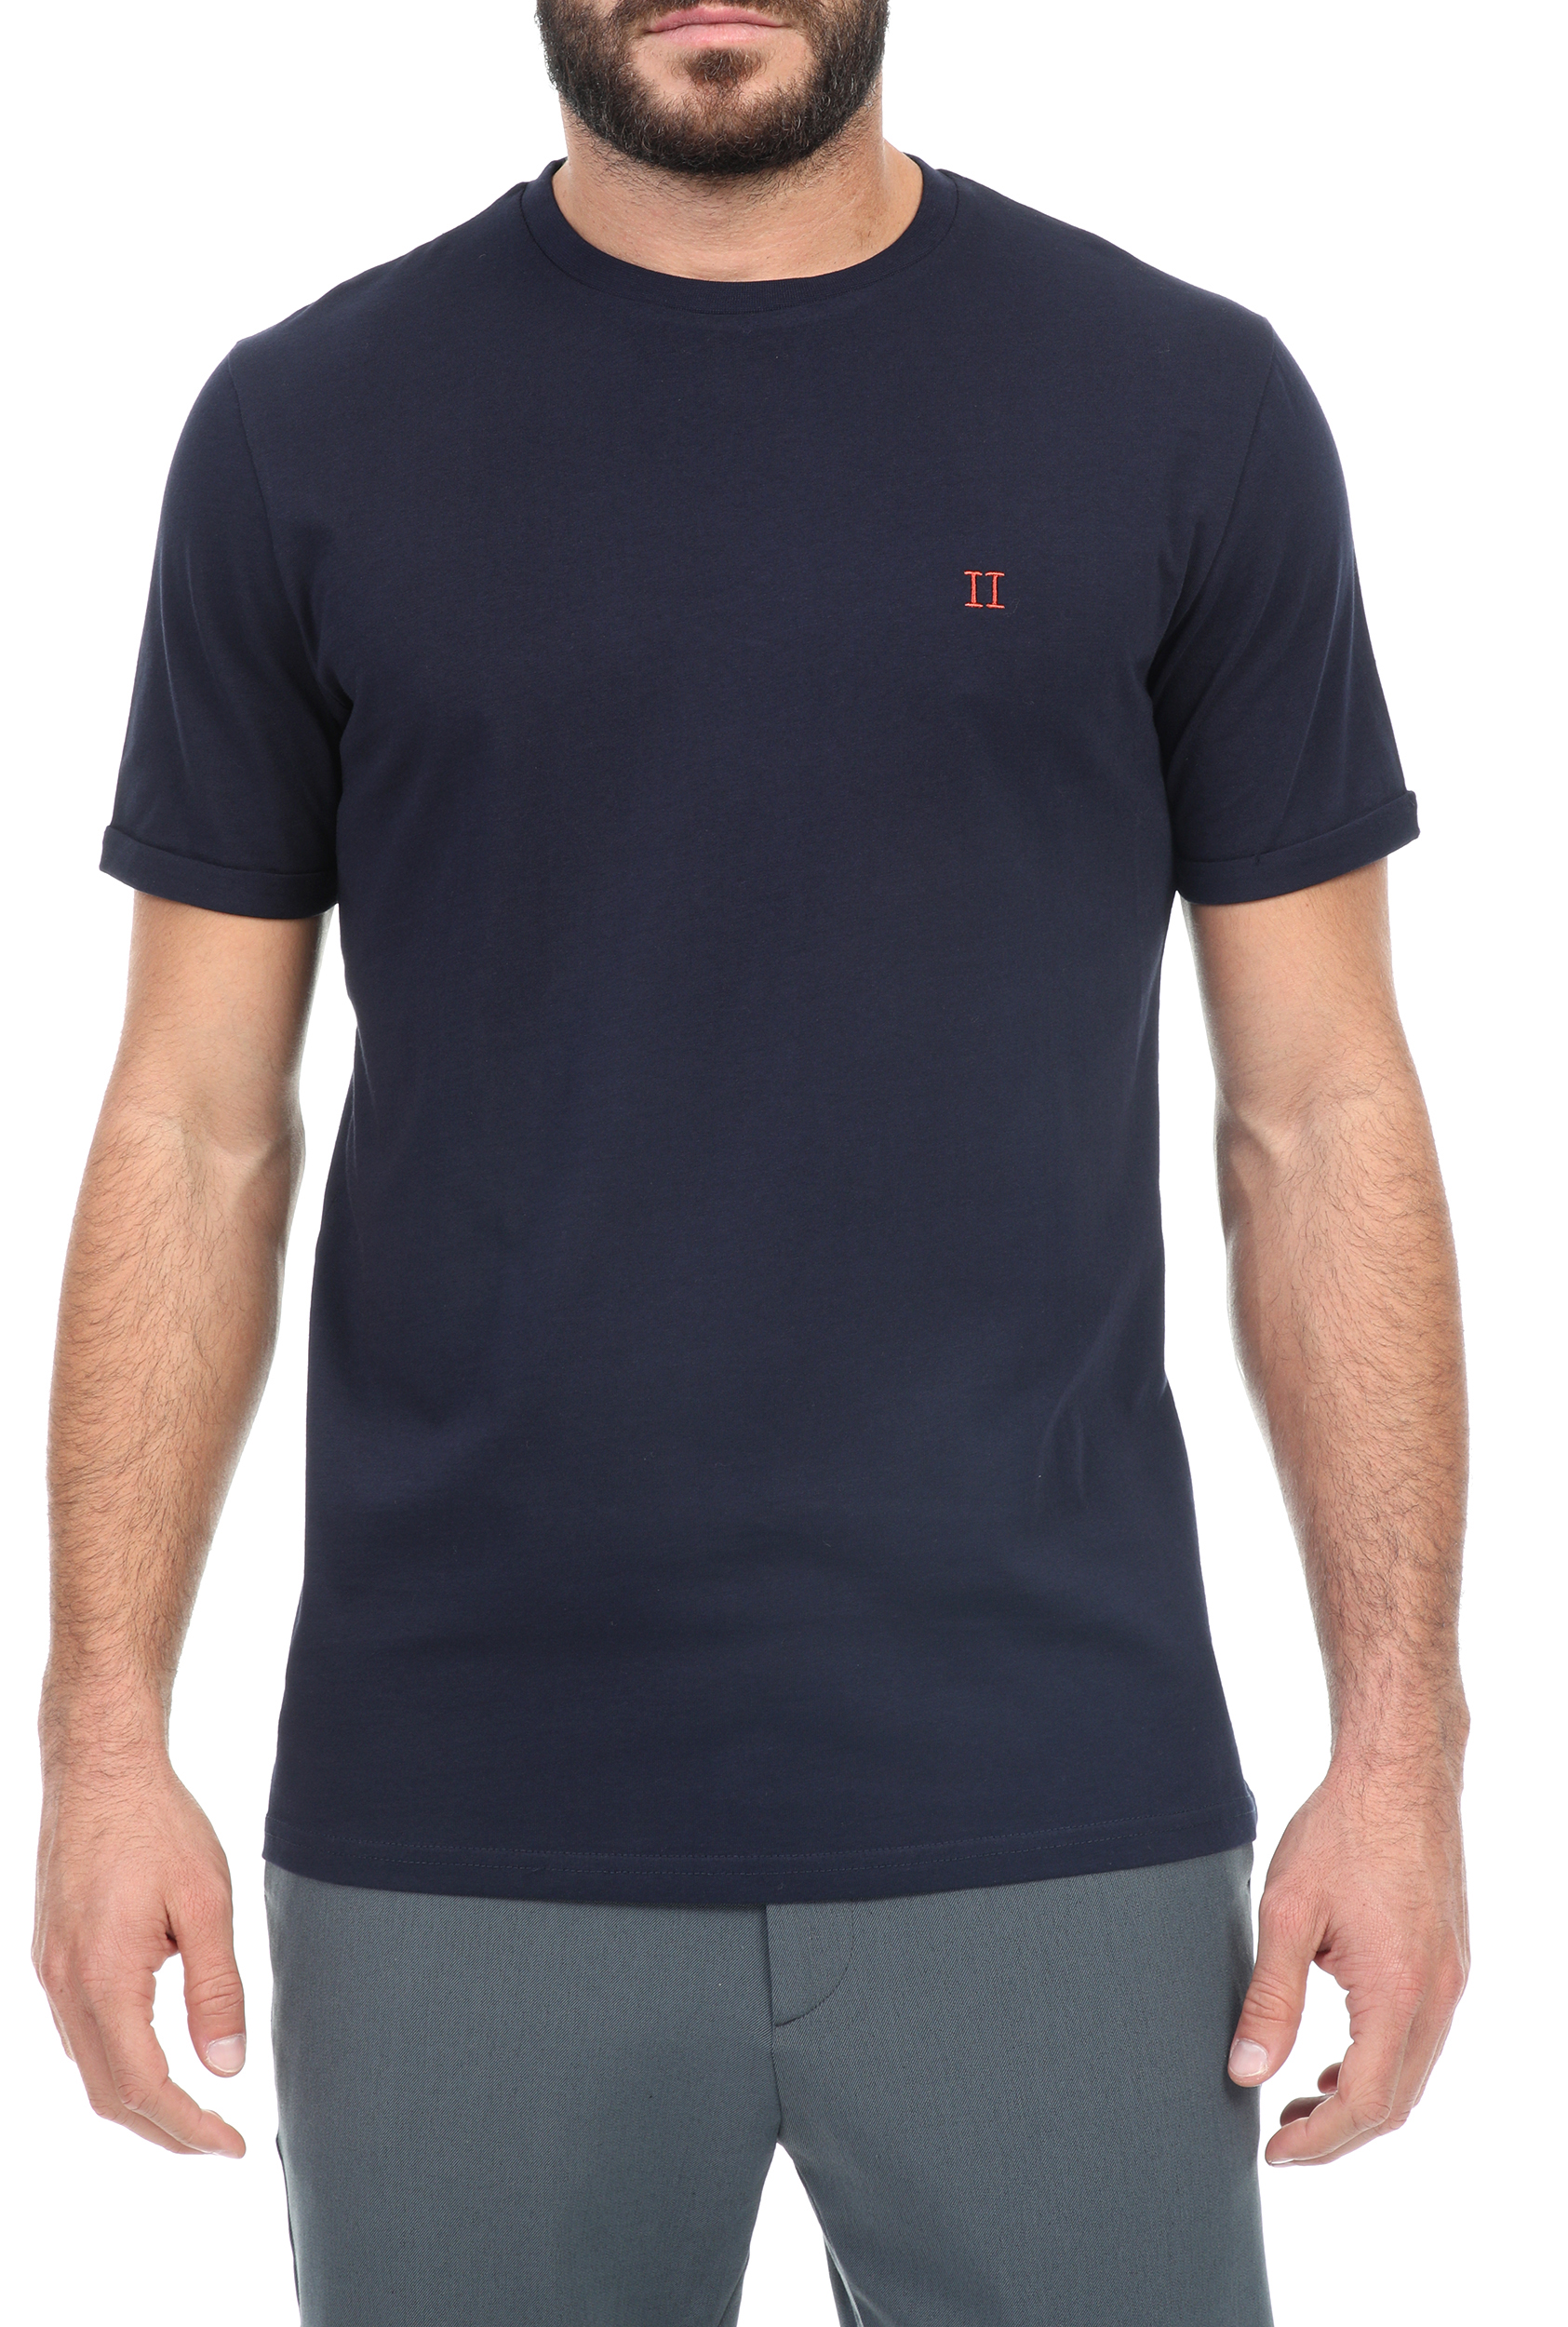 Ανδρικά/Ρούχα/Μπλούζες/Κοντομάνικες LES DEUX - Ανδρικό t-shirt LES DEUX μπλε